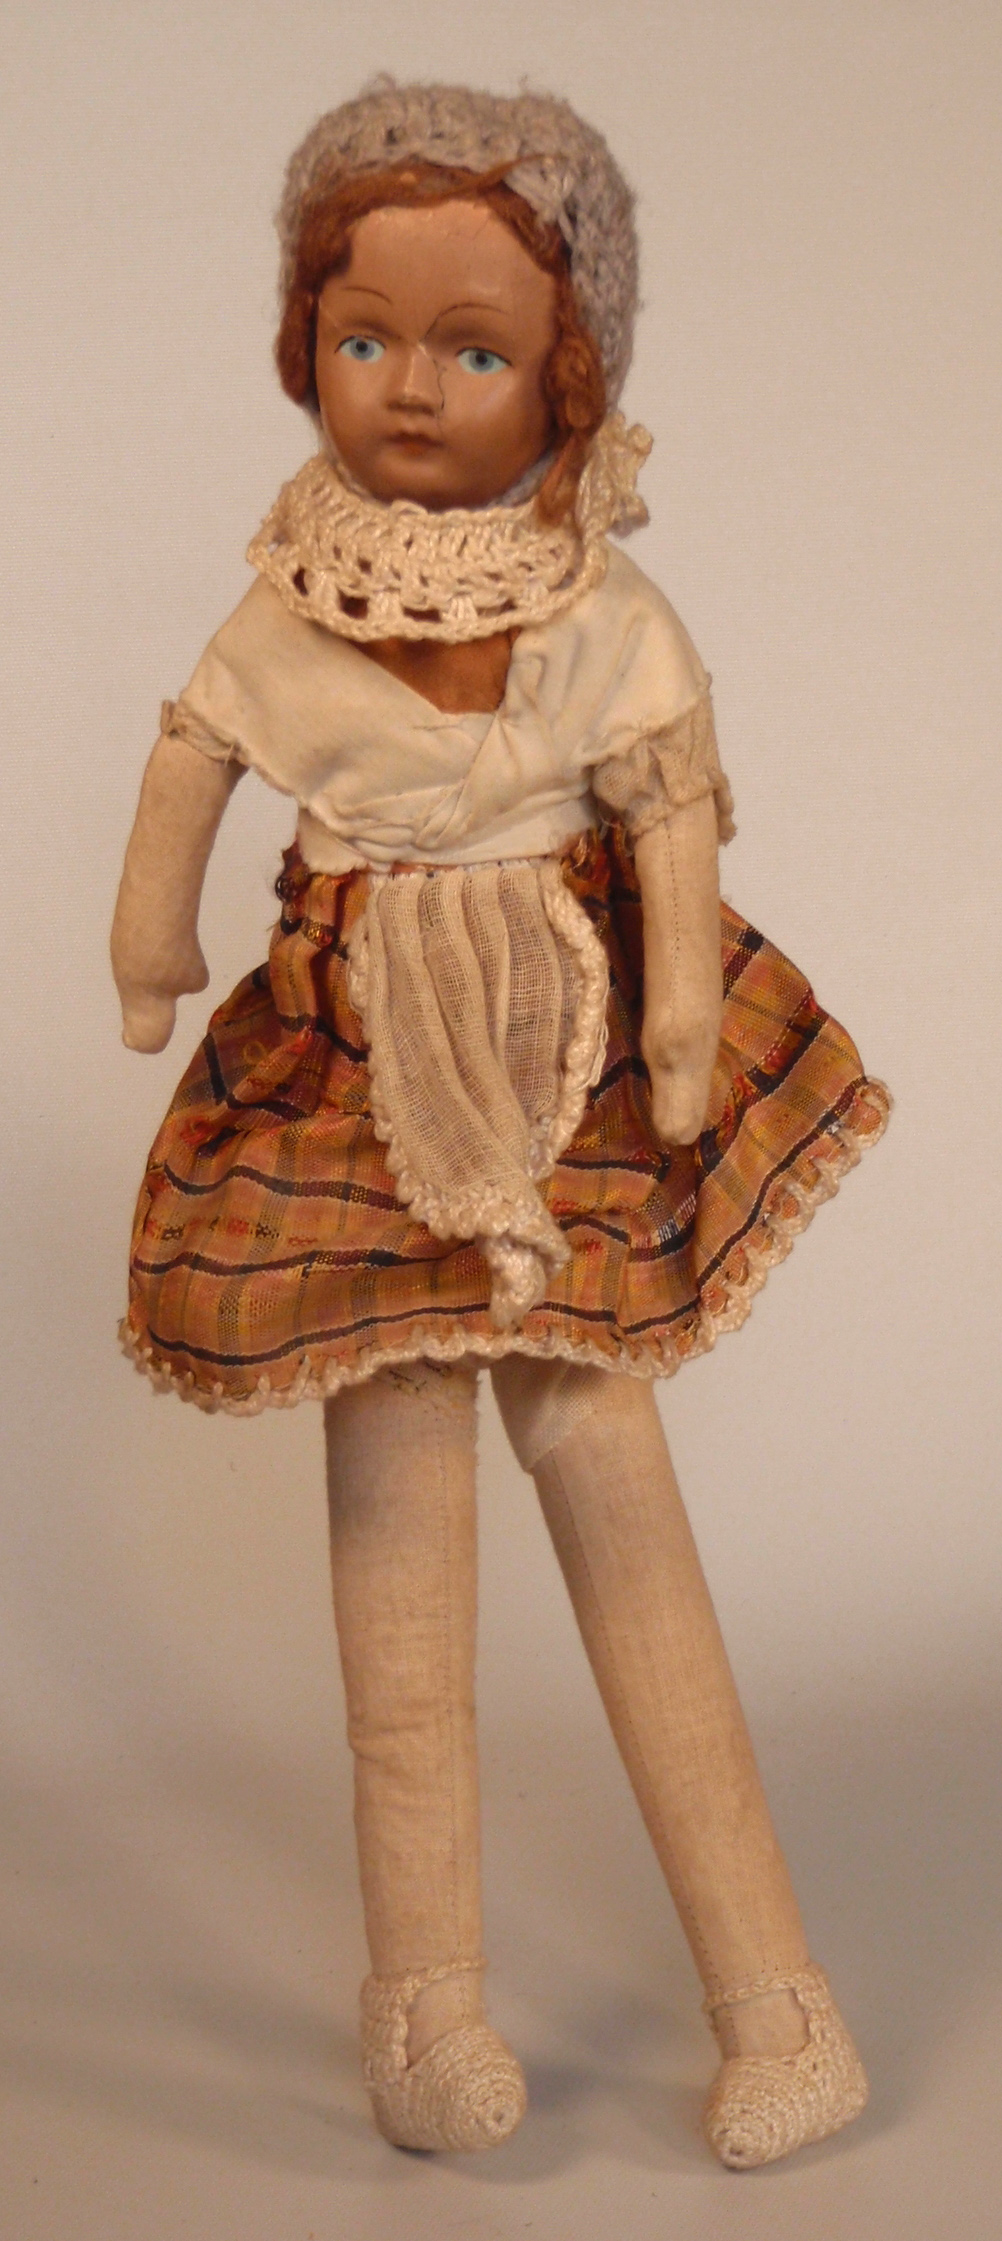 bambola, di pezza, accessori ludici (primi anni '20 del Novecento)